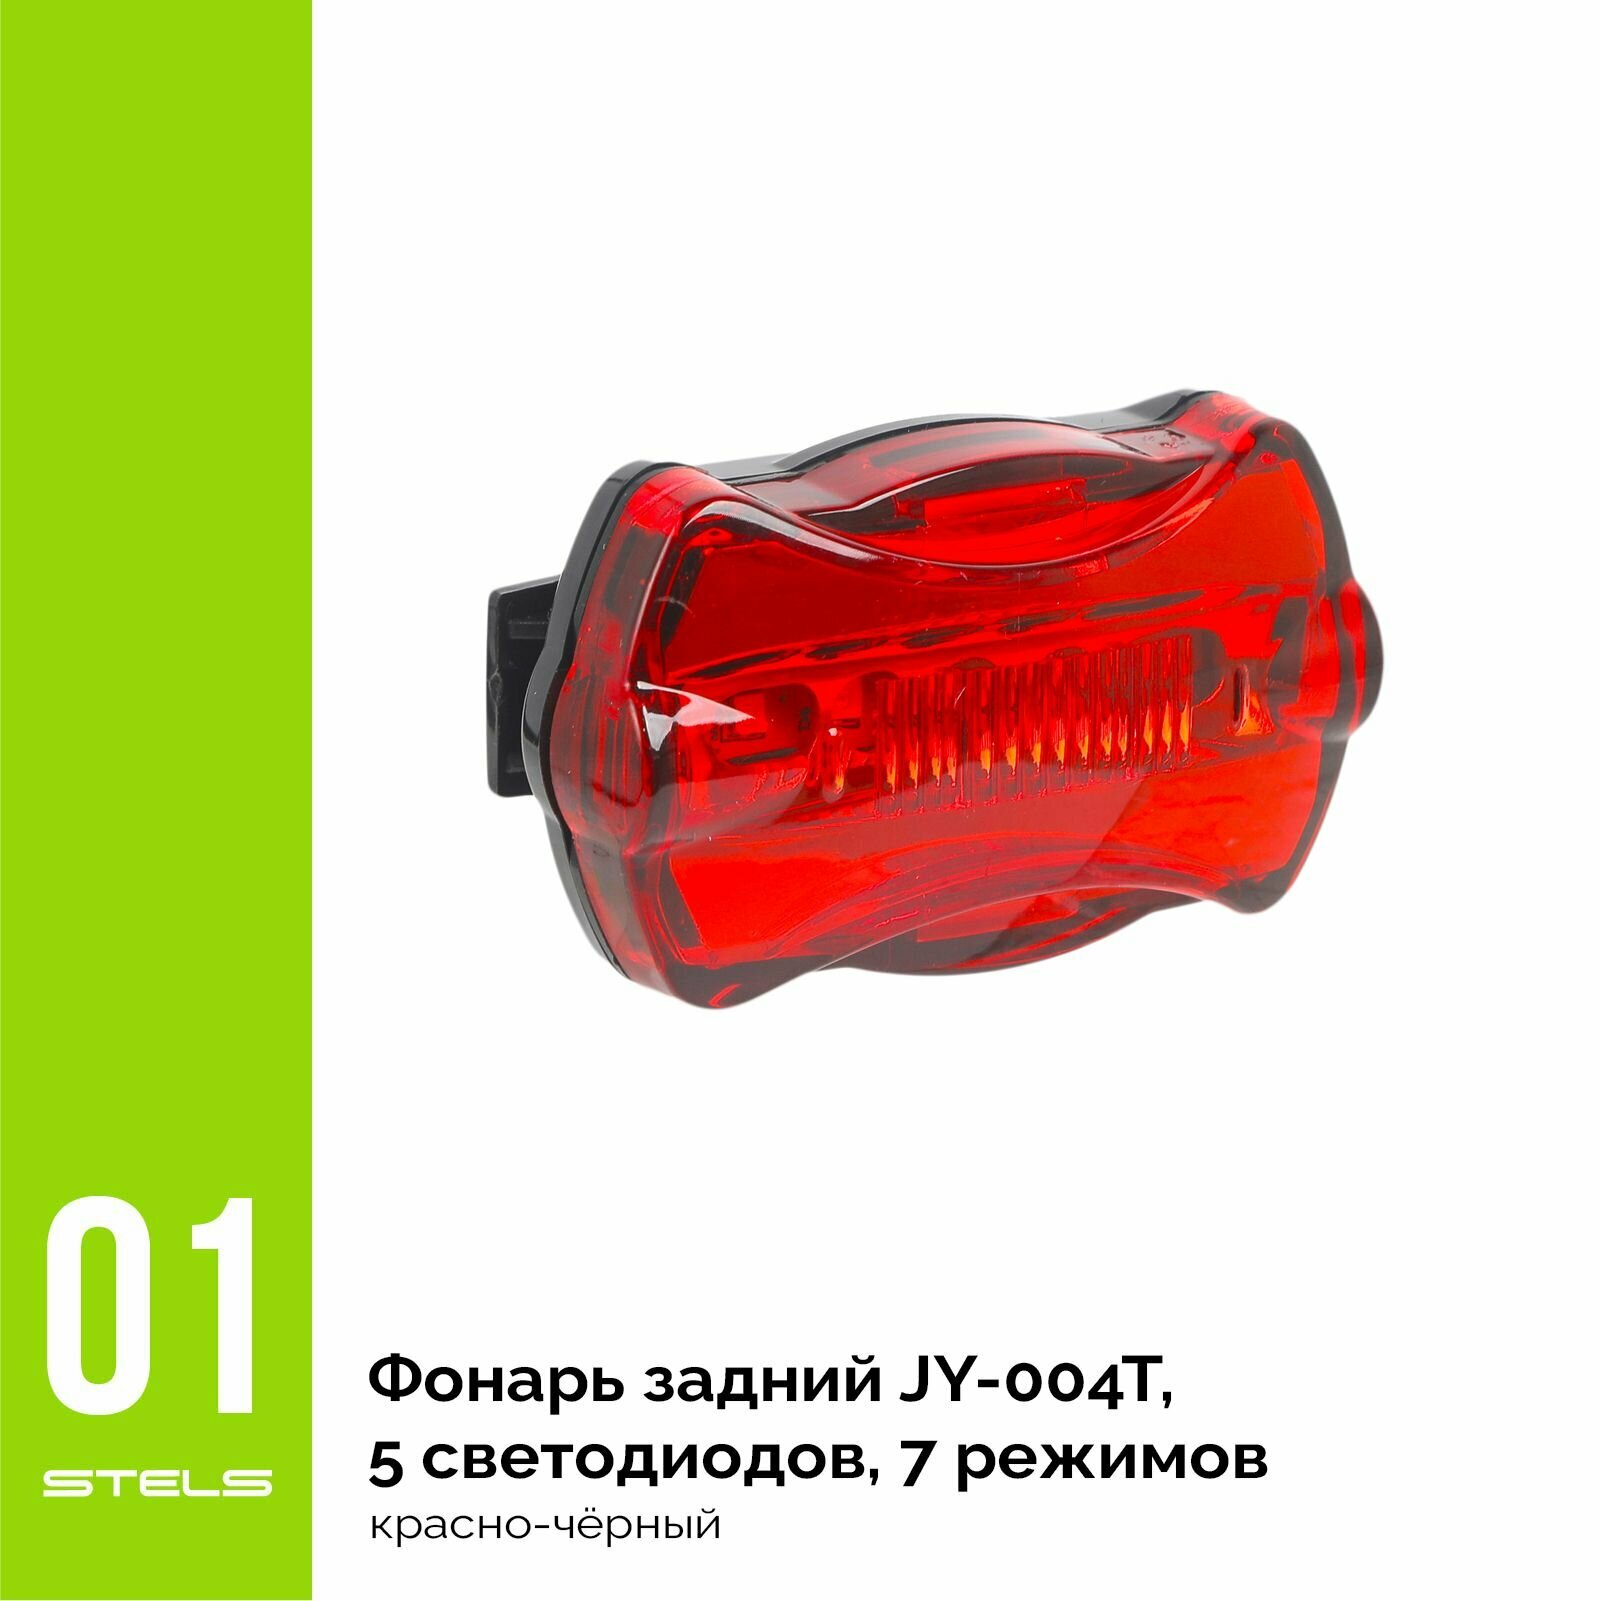 Задний фонарь для велосипеда STELS JY-004T, 5 светодиодов, 7 режимов, красно-чёрный NEW